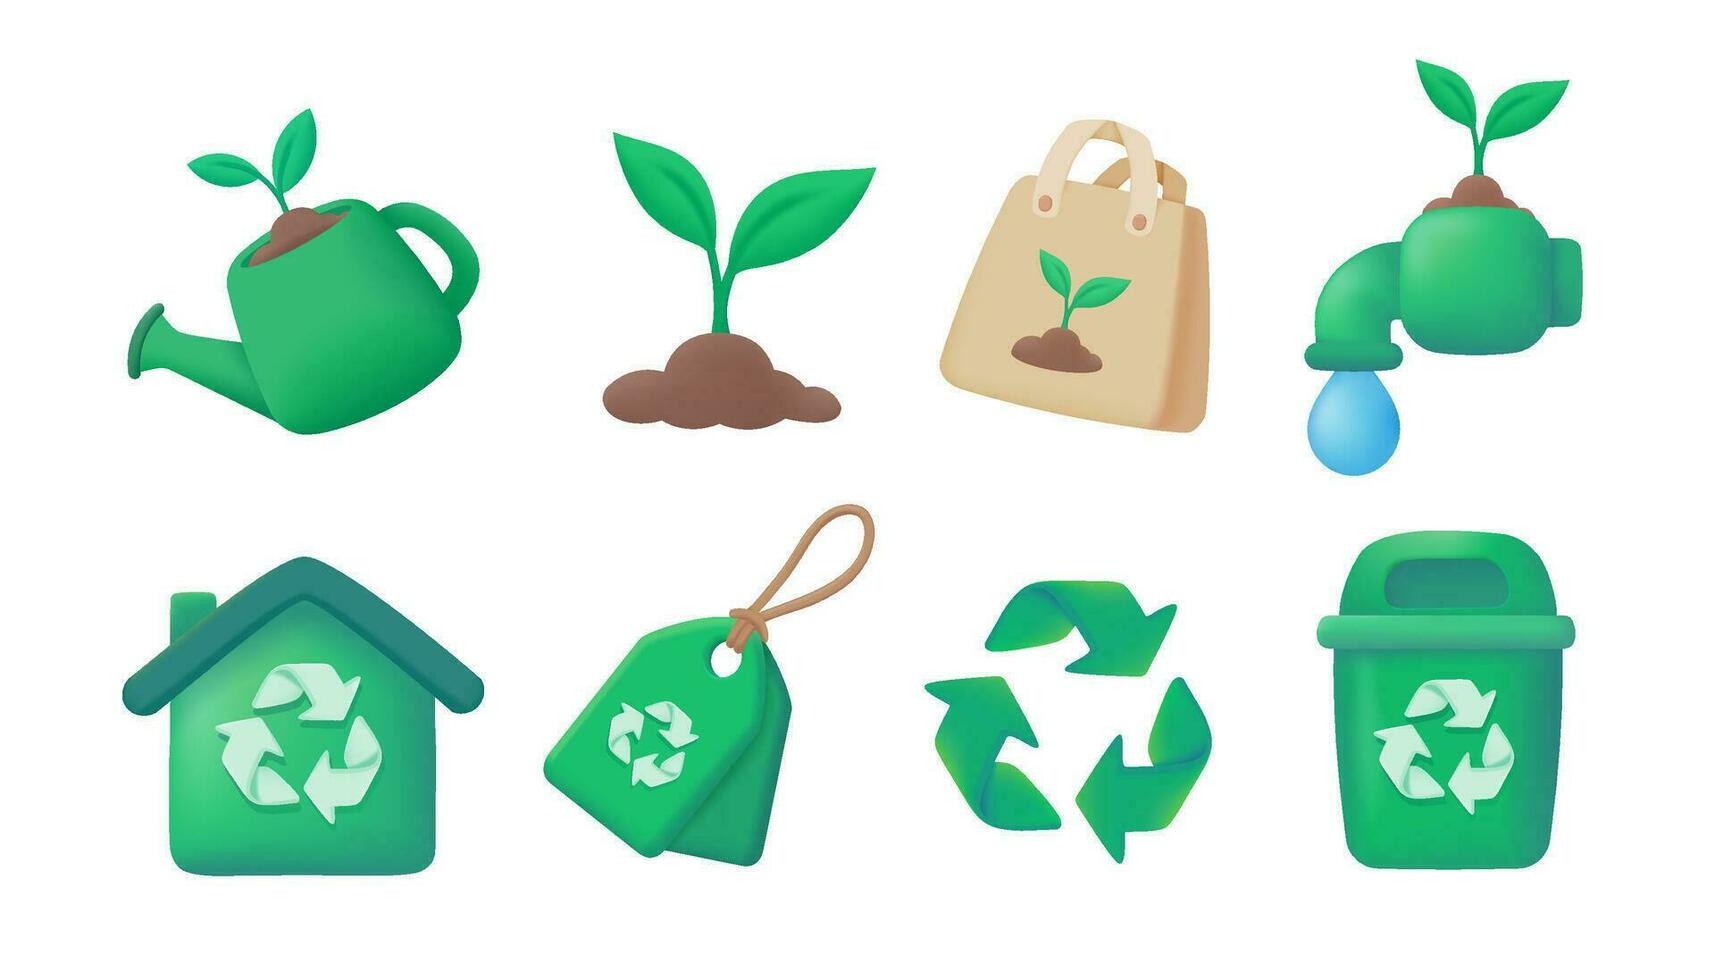 aanplant bomen en gebruik makend van gerecycled materialen helpt verminderen verspilling in de wereld. 3d vector illustratie